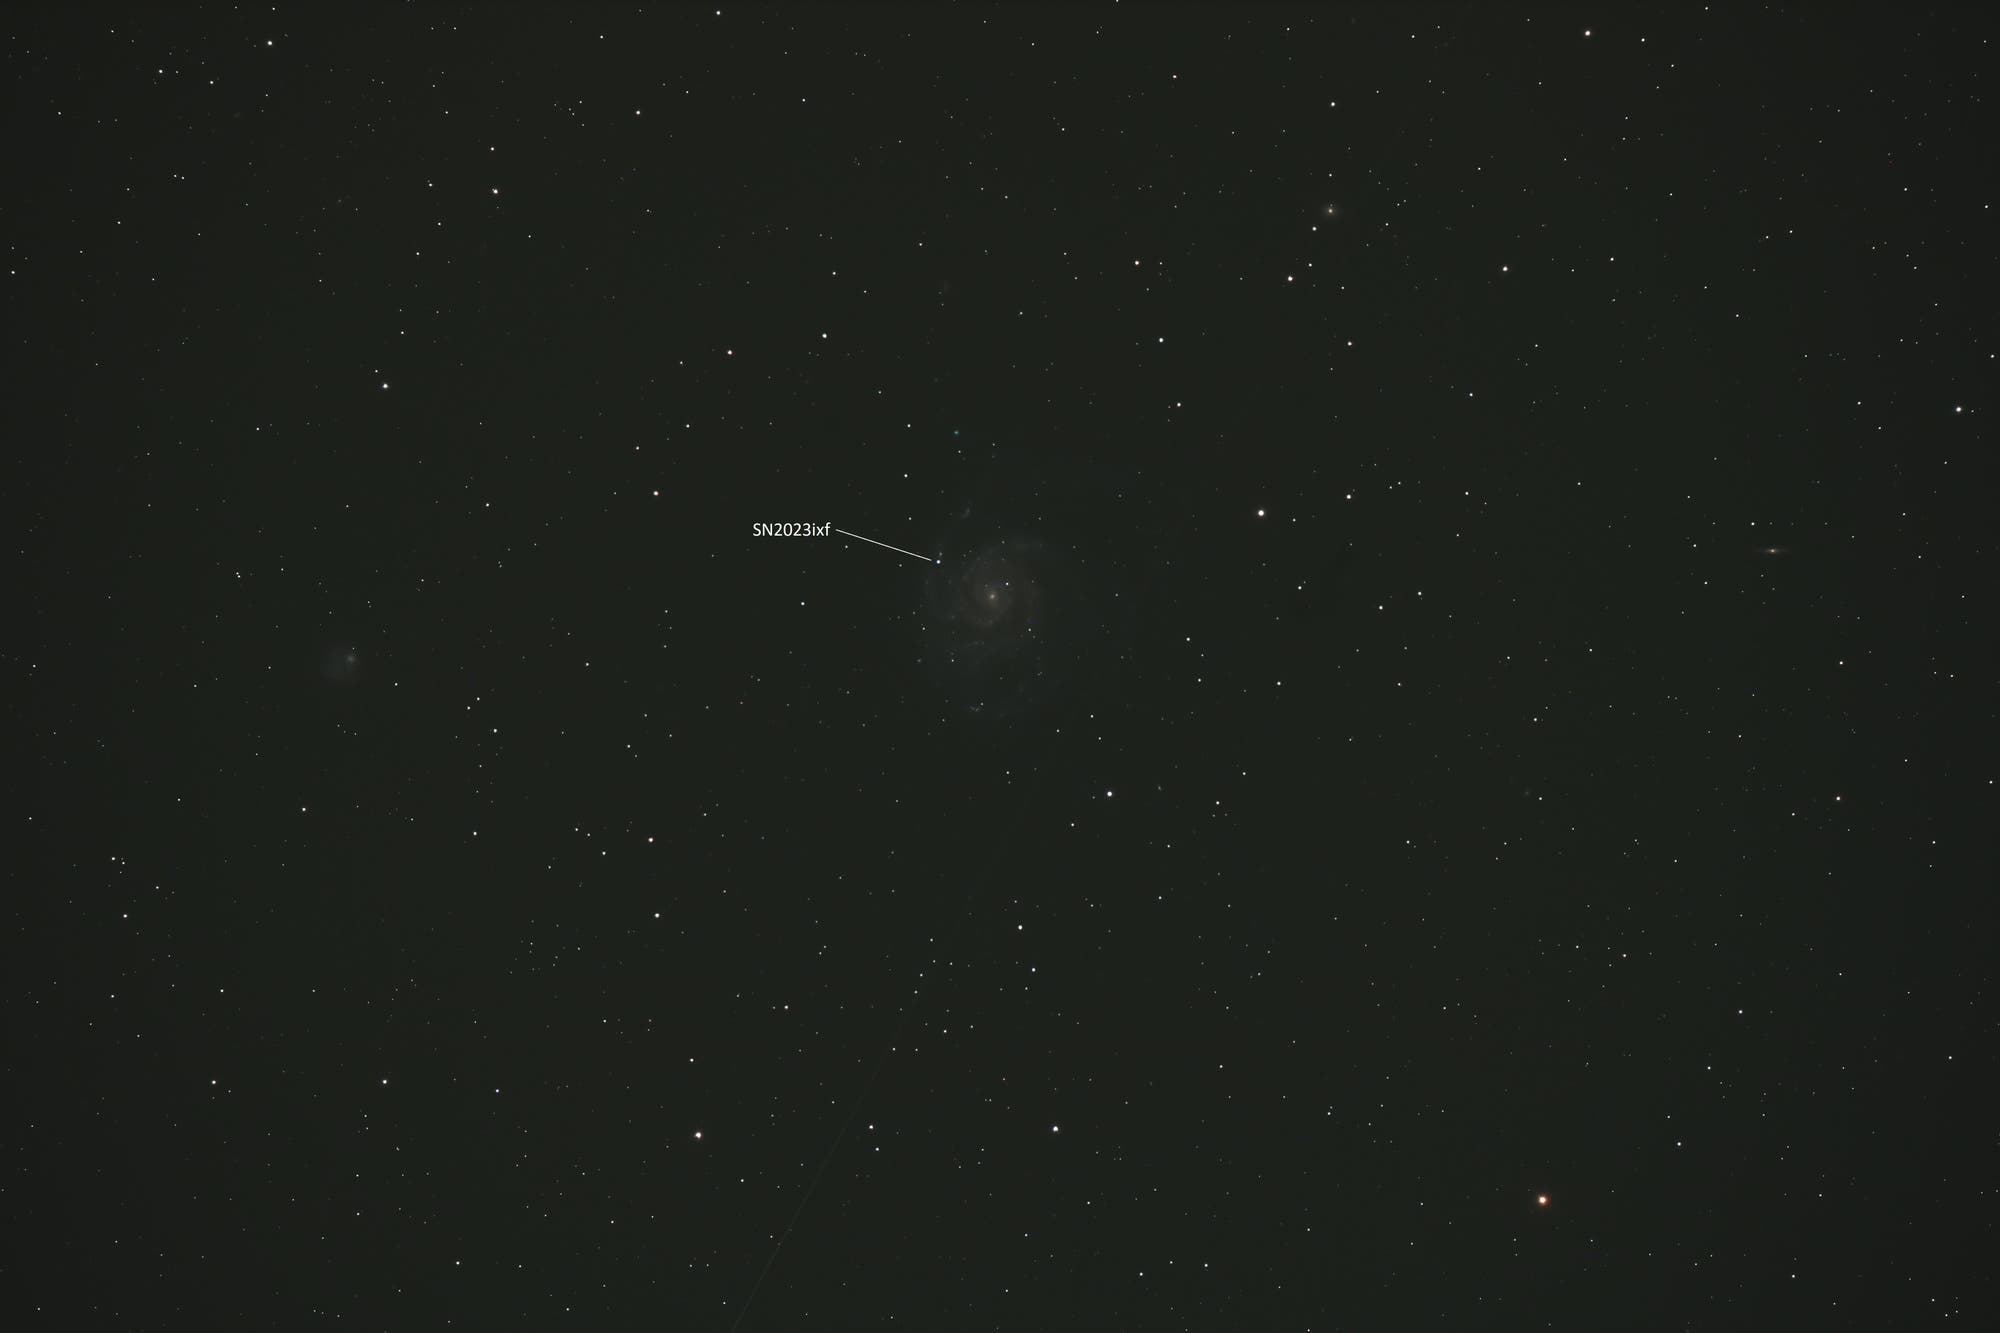 Feuerrad-Galaxie M 101 mit Supernova SN2023ixf - Rohaufnahme zum Vergleich